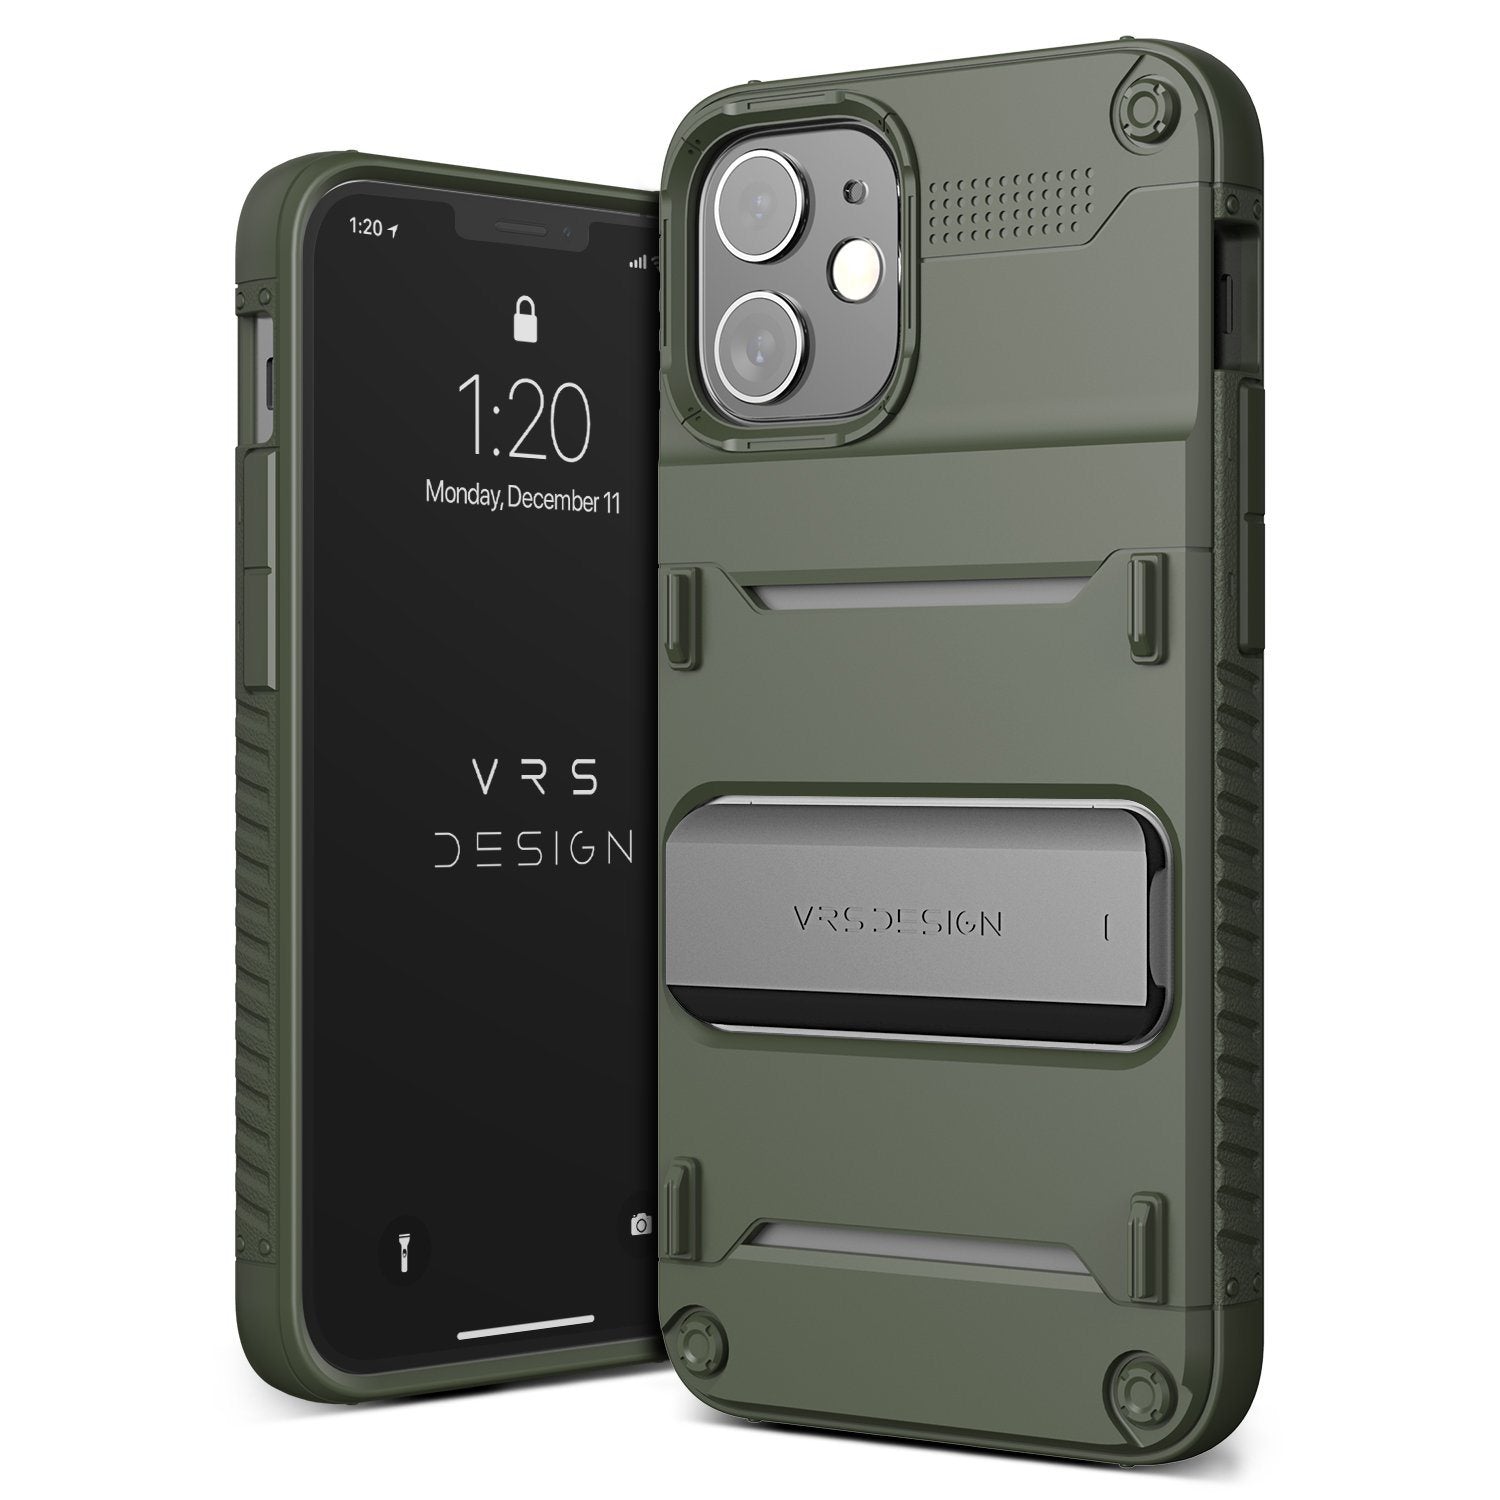 VRS Design Quickstand Case for iPhone 12 mini 5.4"(2020), Green/Metal Black Default VRS Design 